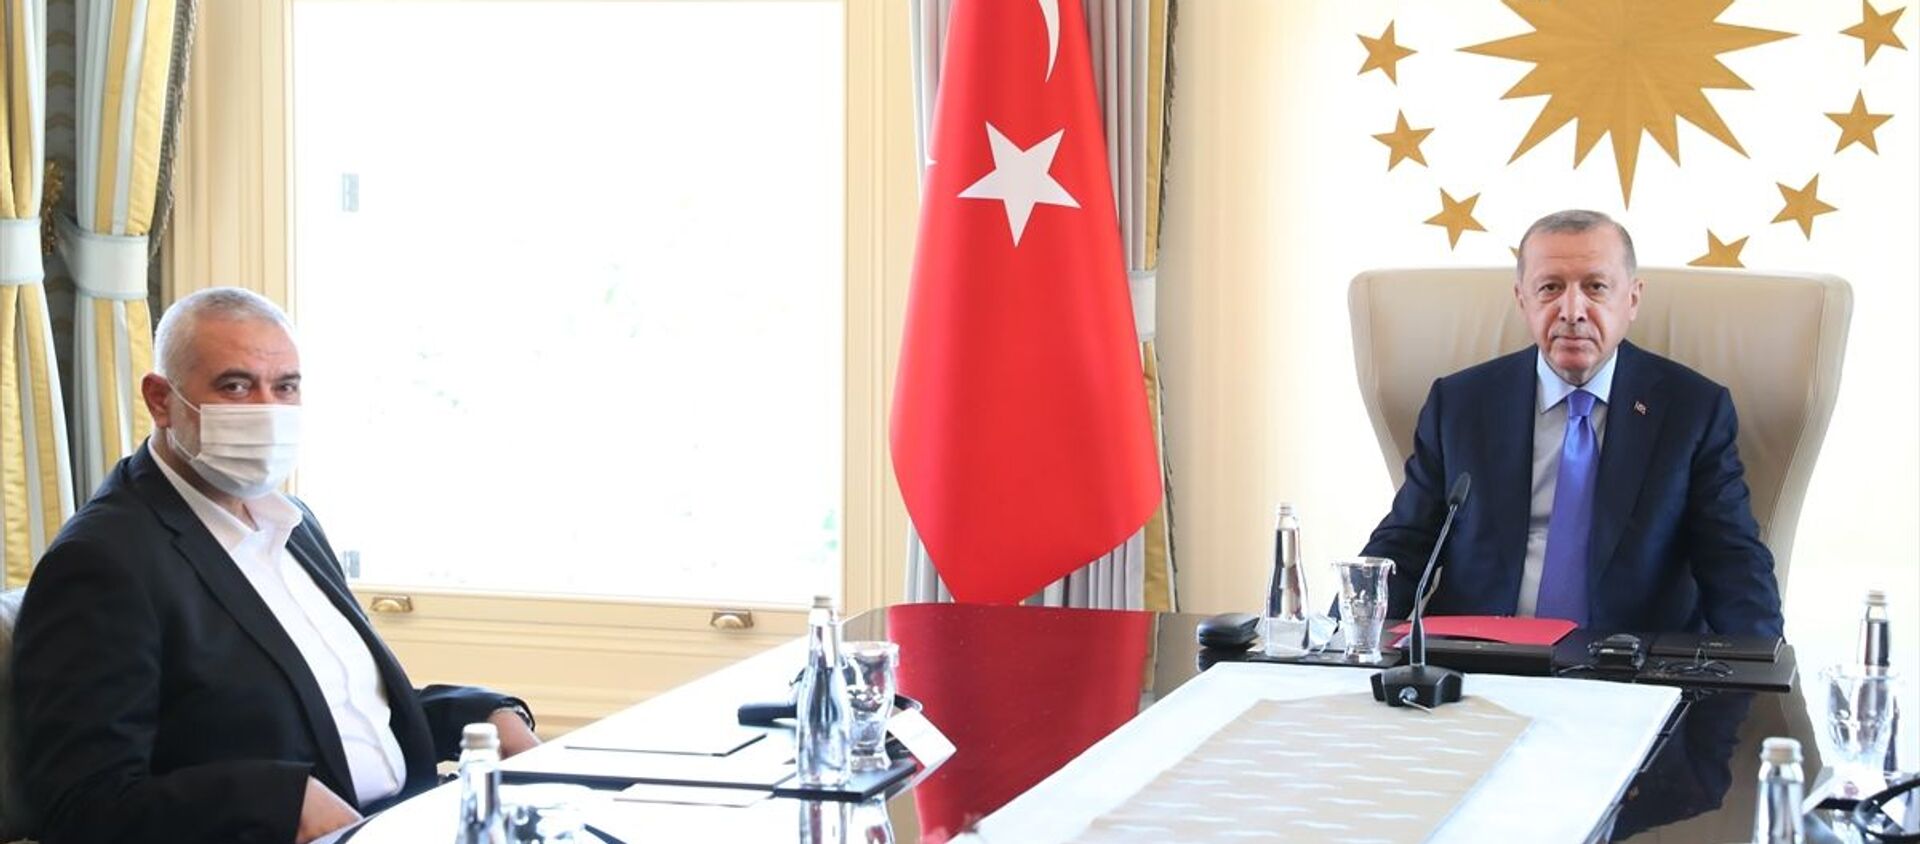 AK Parti Genel Başkanı ve Cumhurbaşkanı Recep Tayyip Erdoğan'ın 22 Ağustos'ta İstanbul'da Hamas Siyasi Büro Başkanı İsmail Haniye ve beraberindeki heyetle görüşmesi - Sputnik Türkiye, 1920, 02.04.2021